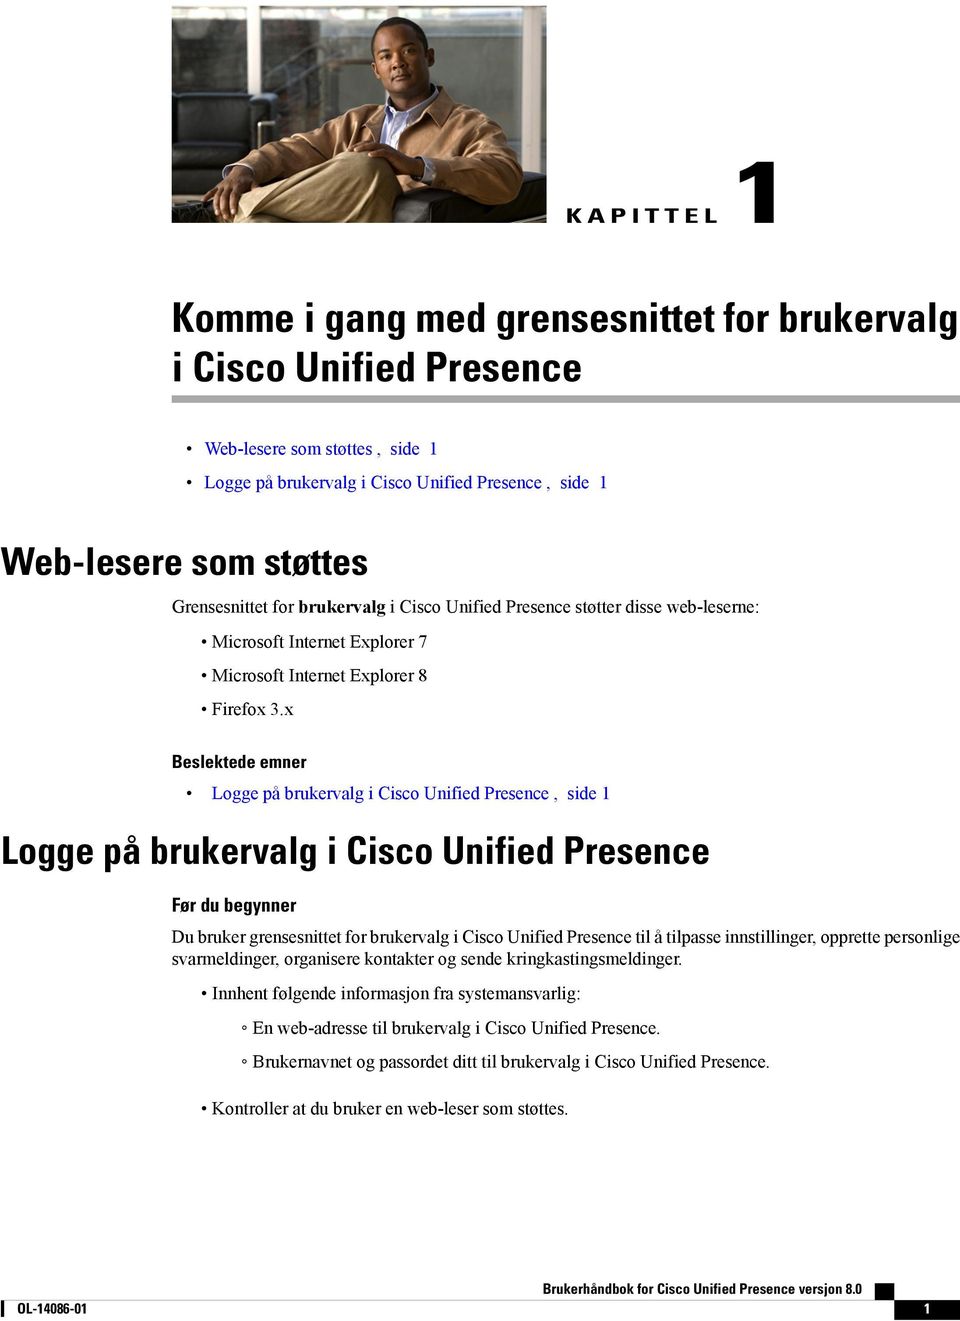 x Beslektede emner Logge på brukervalg i Cisco Unified Presence, side 1 Logge på brukervalg i Cisco Unified Presence Før du begynner Du bruker grensesnittet for brukervalg i Cisco Unified Presence